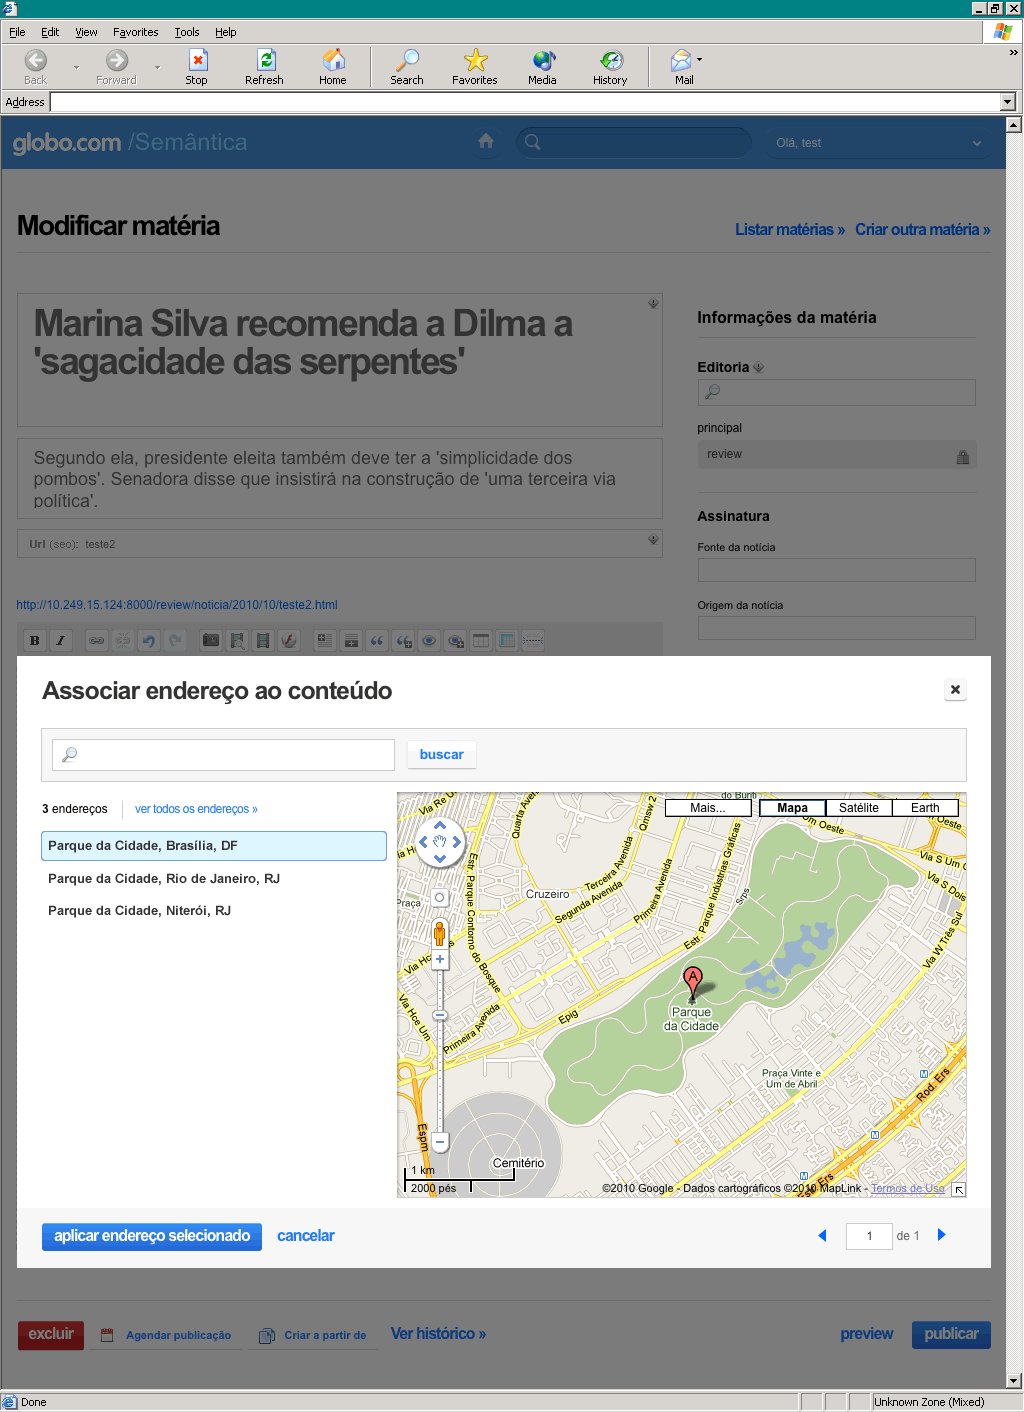 Globo.com's address management tool